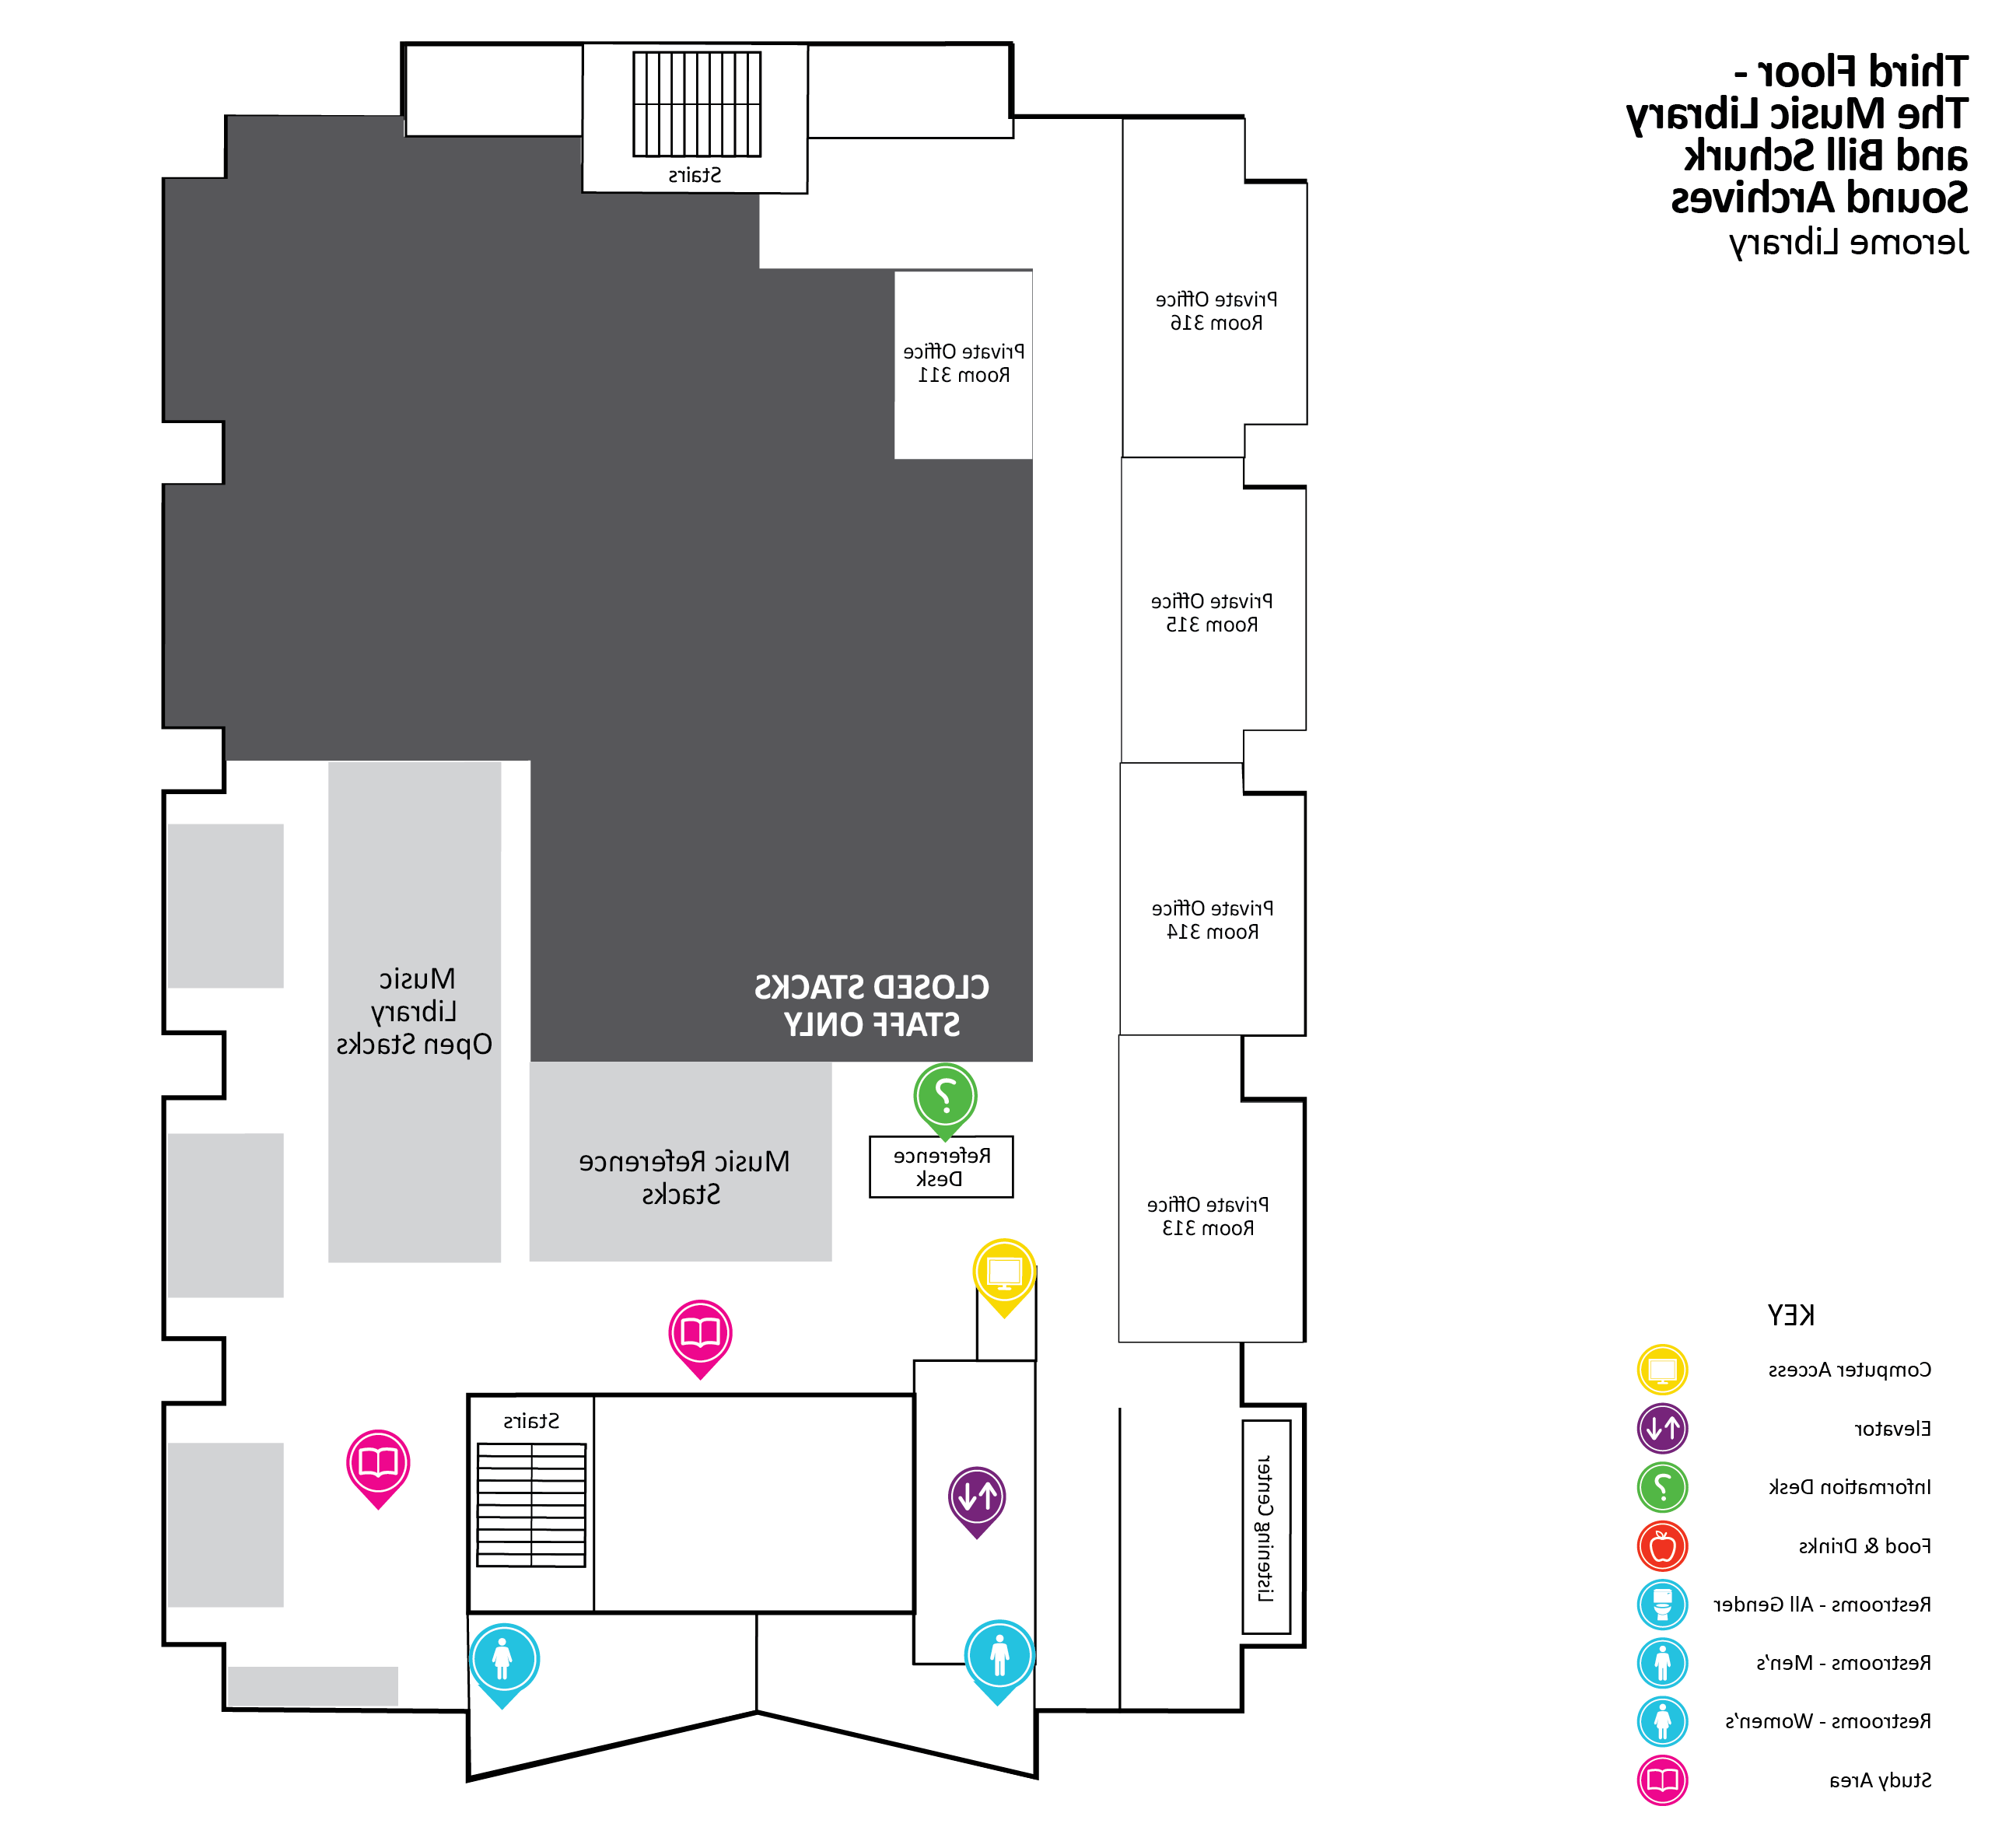 3rd Floor Map